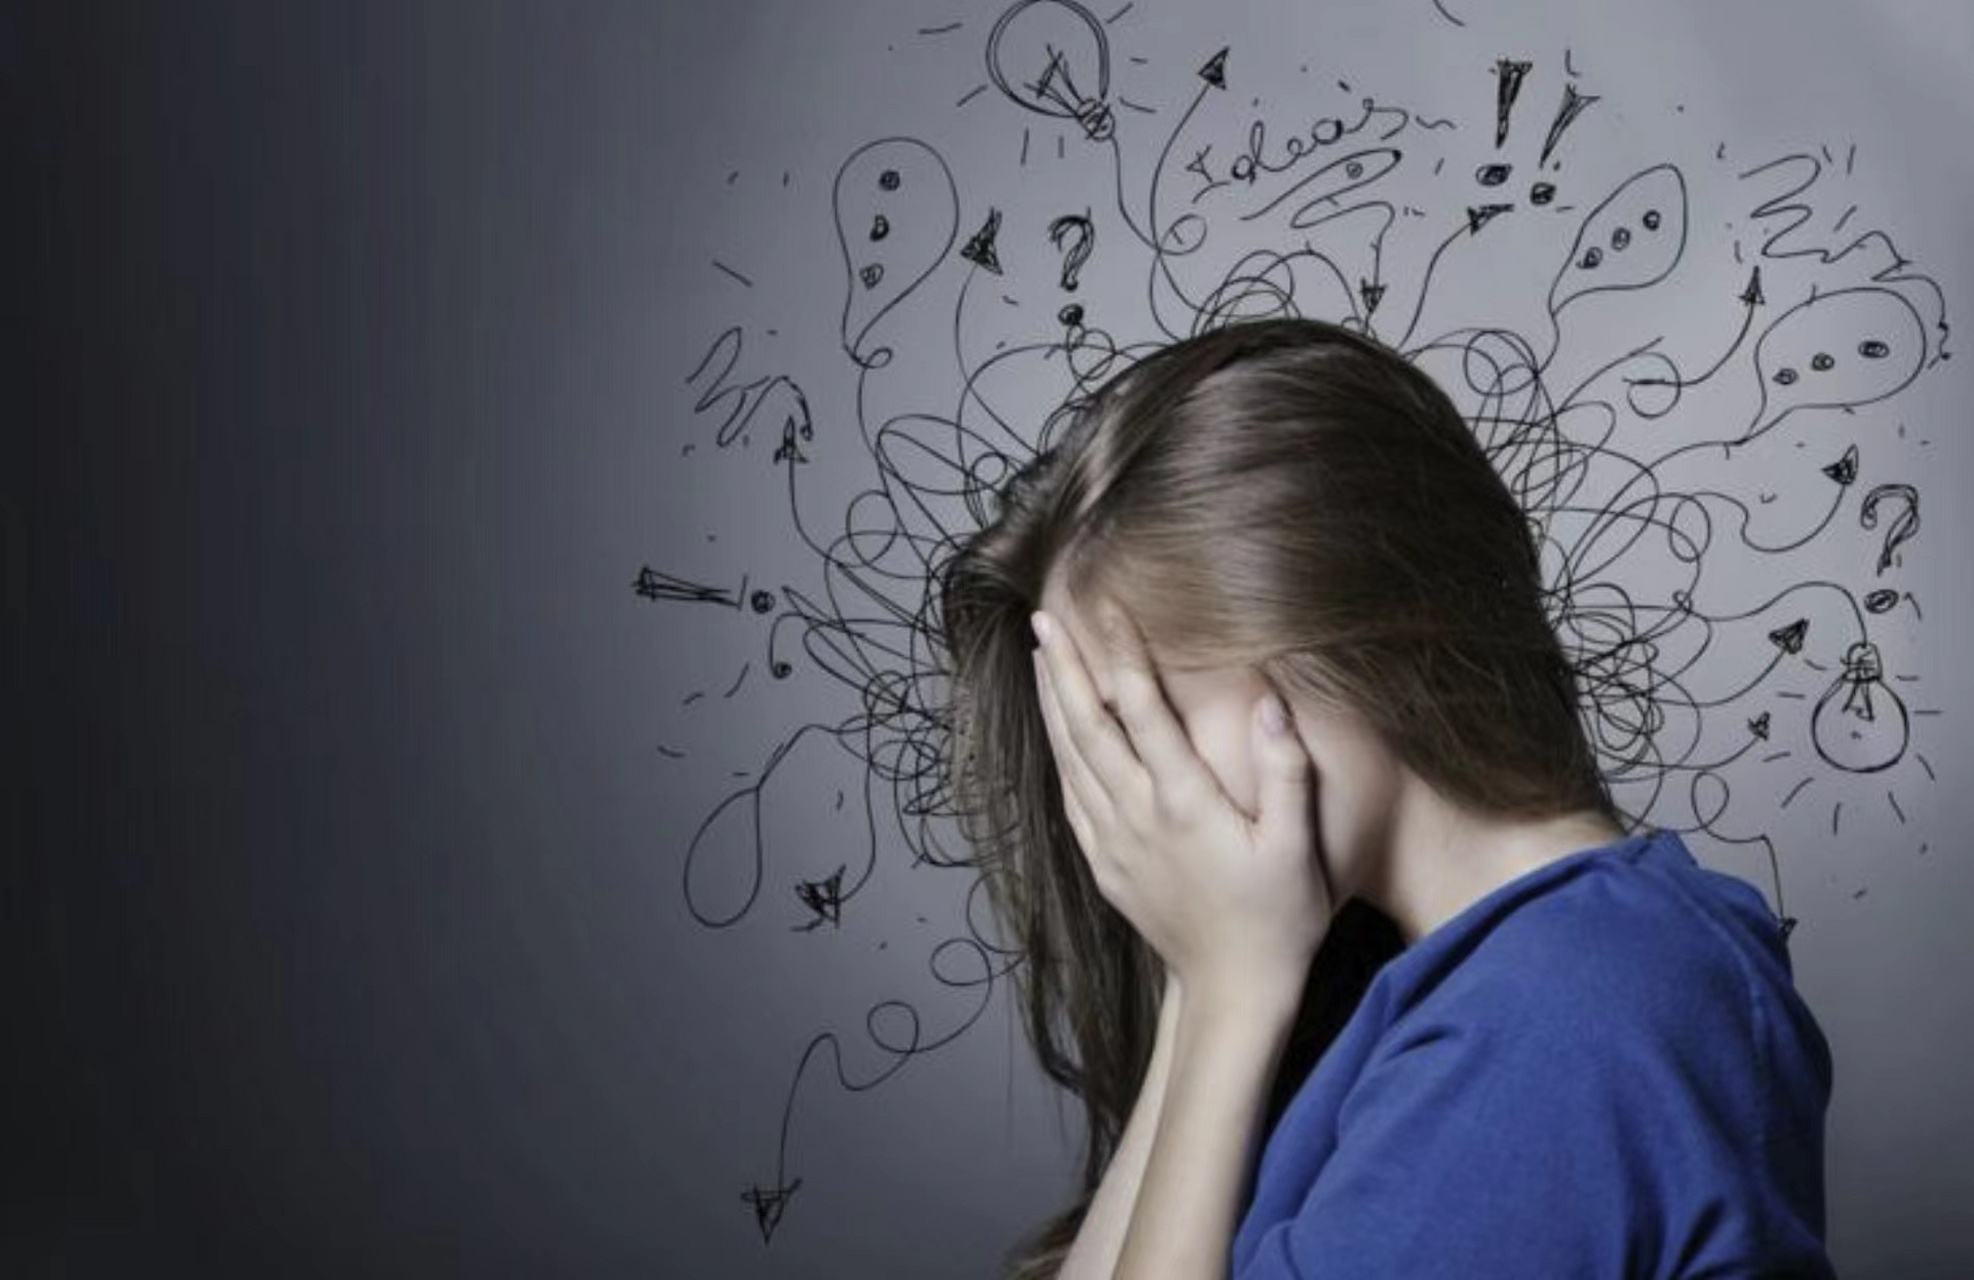 广泛性焦虑症表现之过度担心  精神上的过度担心是焦虑症状的核心